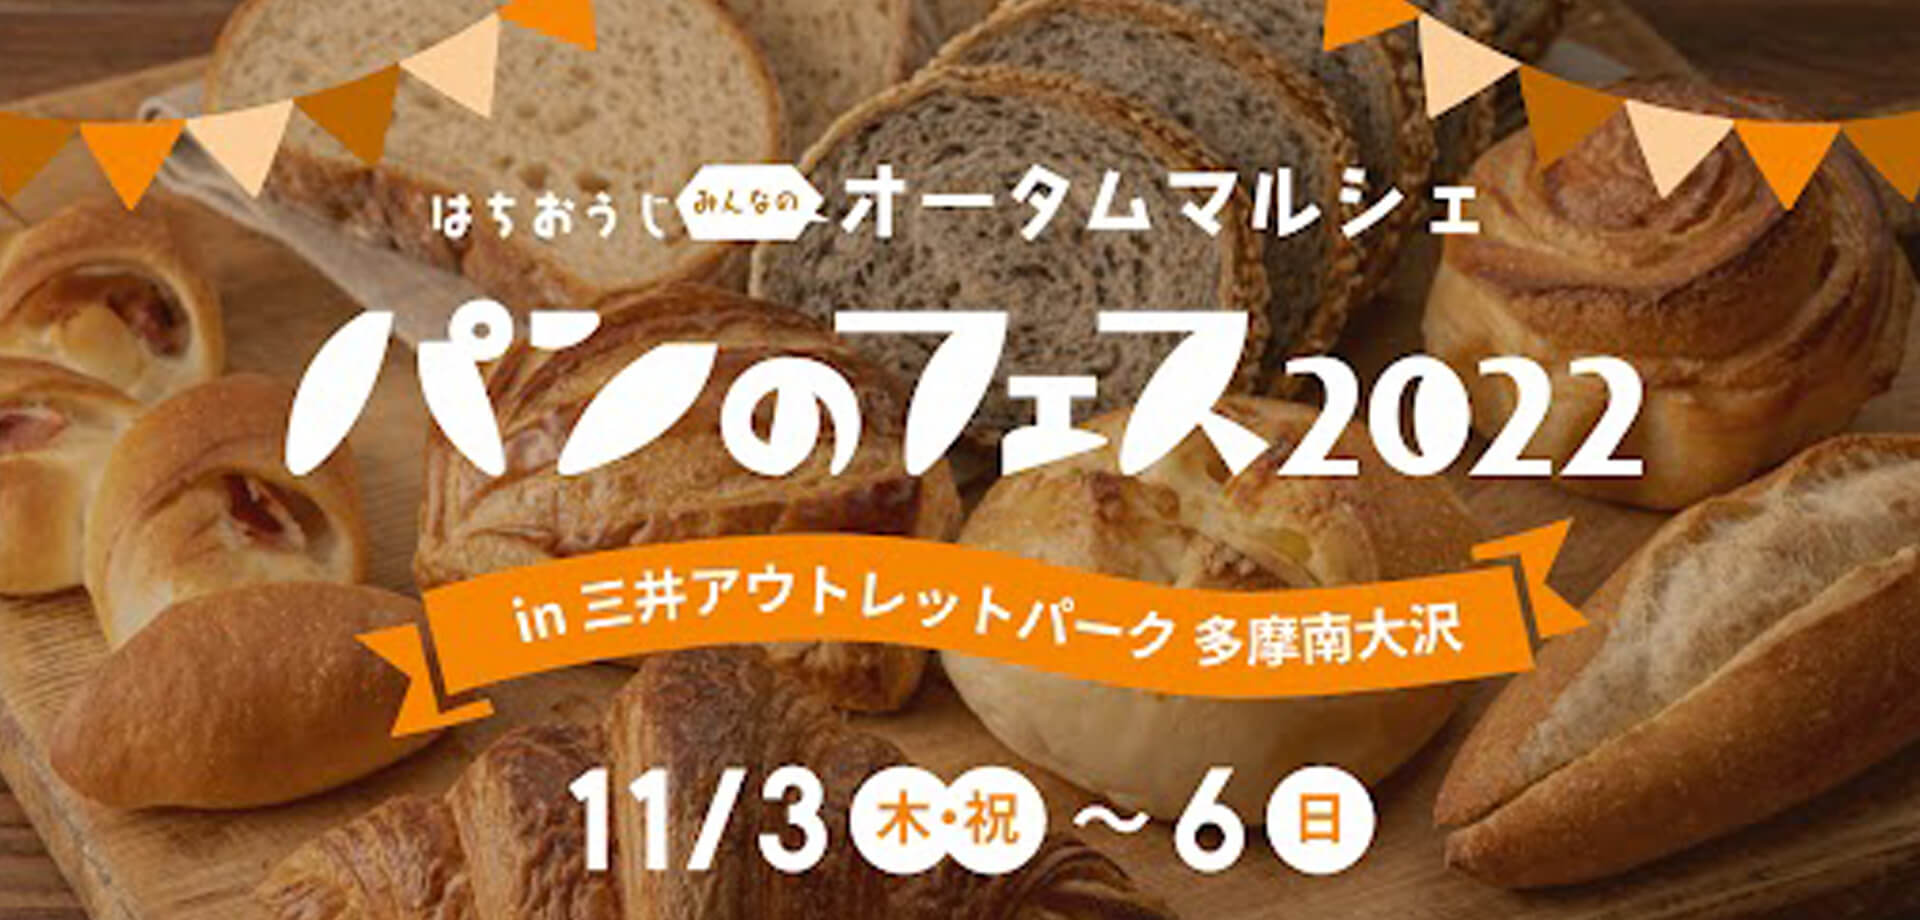 パンのフェス2022 in三井アウトレットパーク多摩南大沢